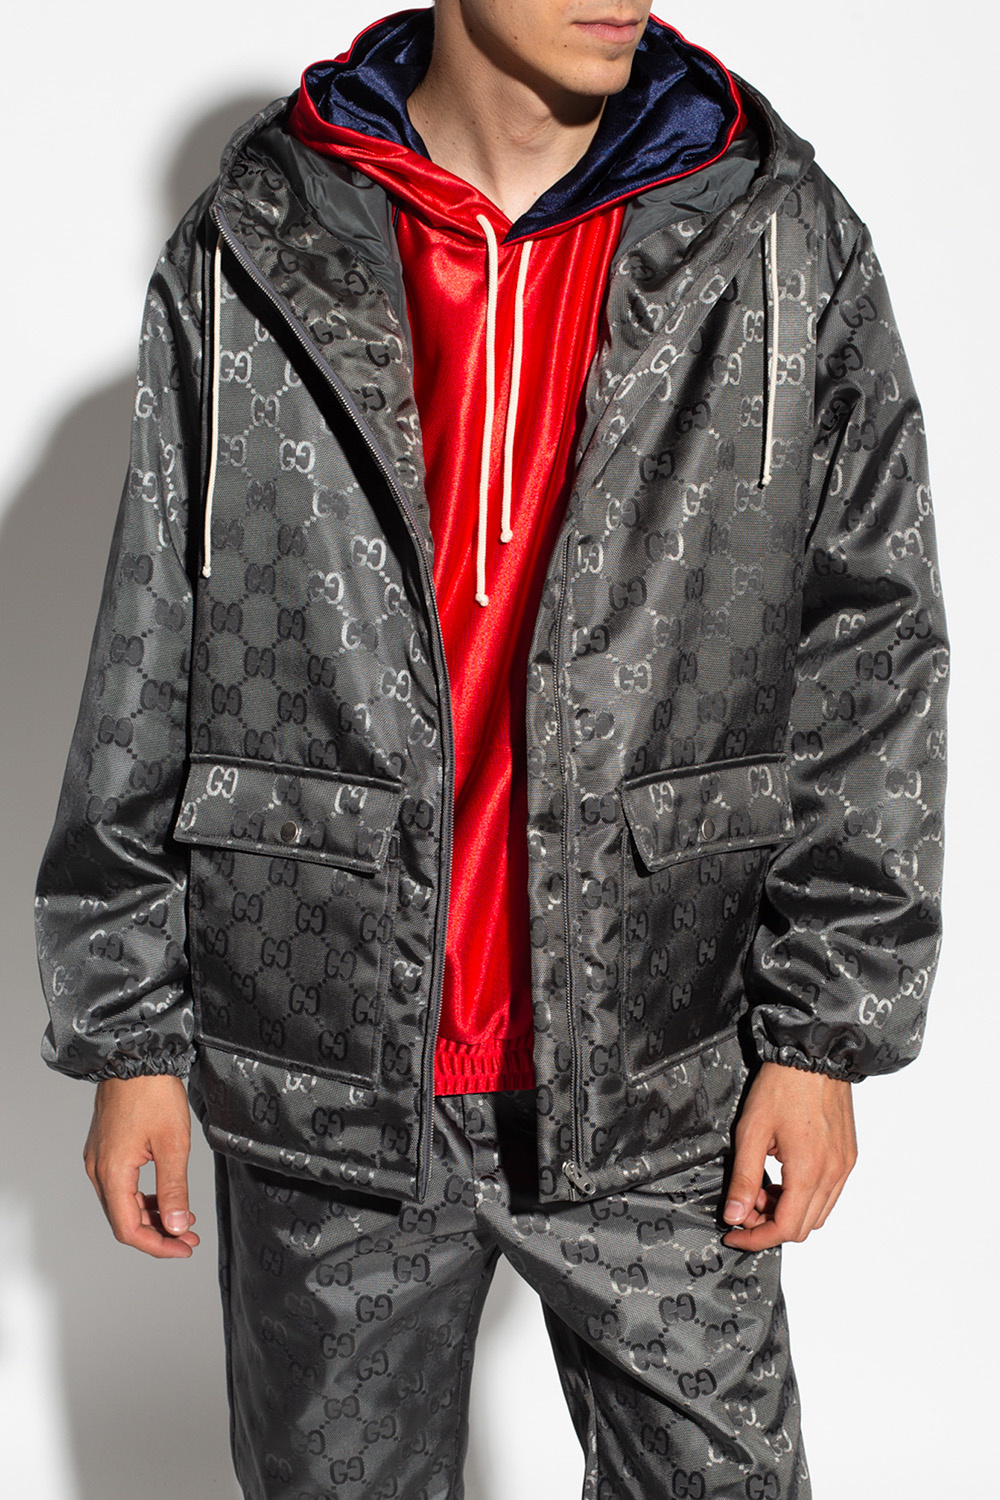 gucci hoodie jacket size: M-3XL, Mr. Chen Blog